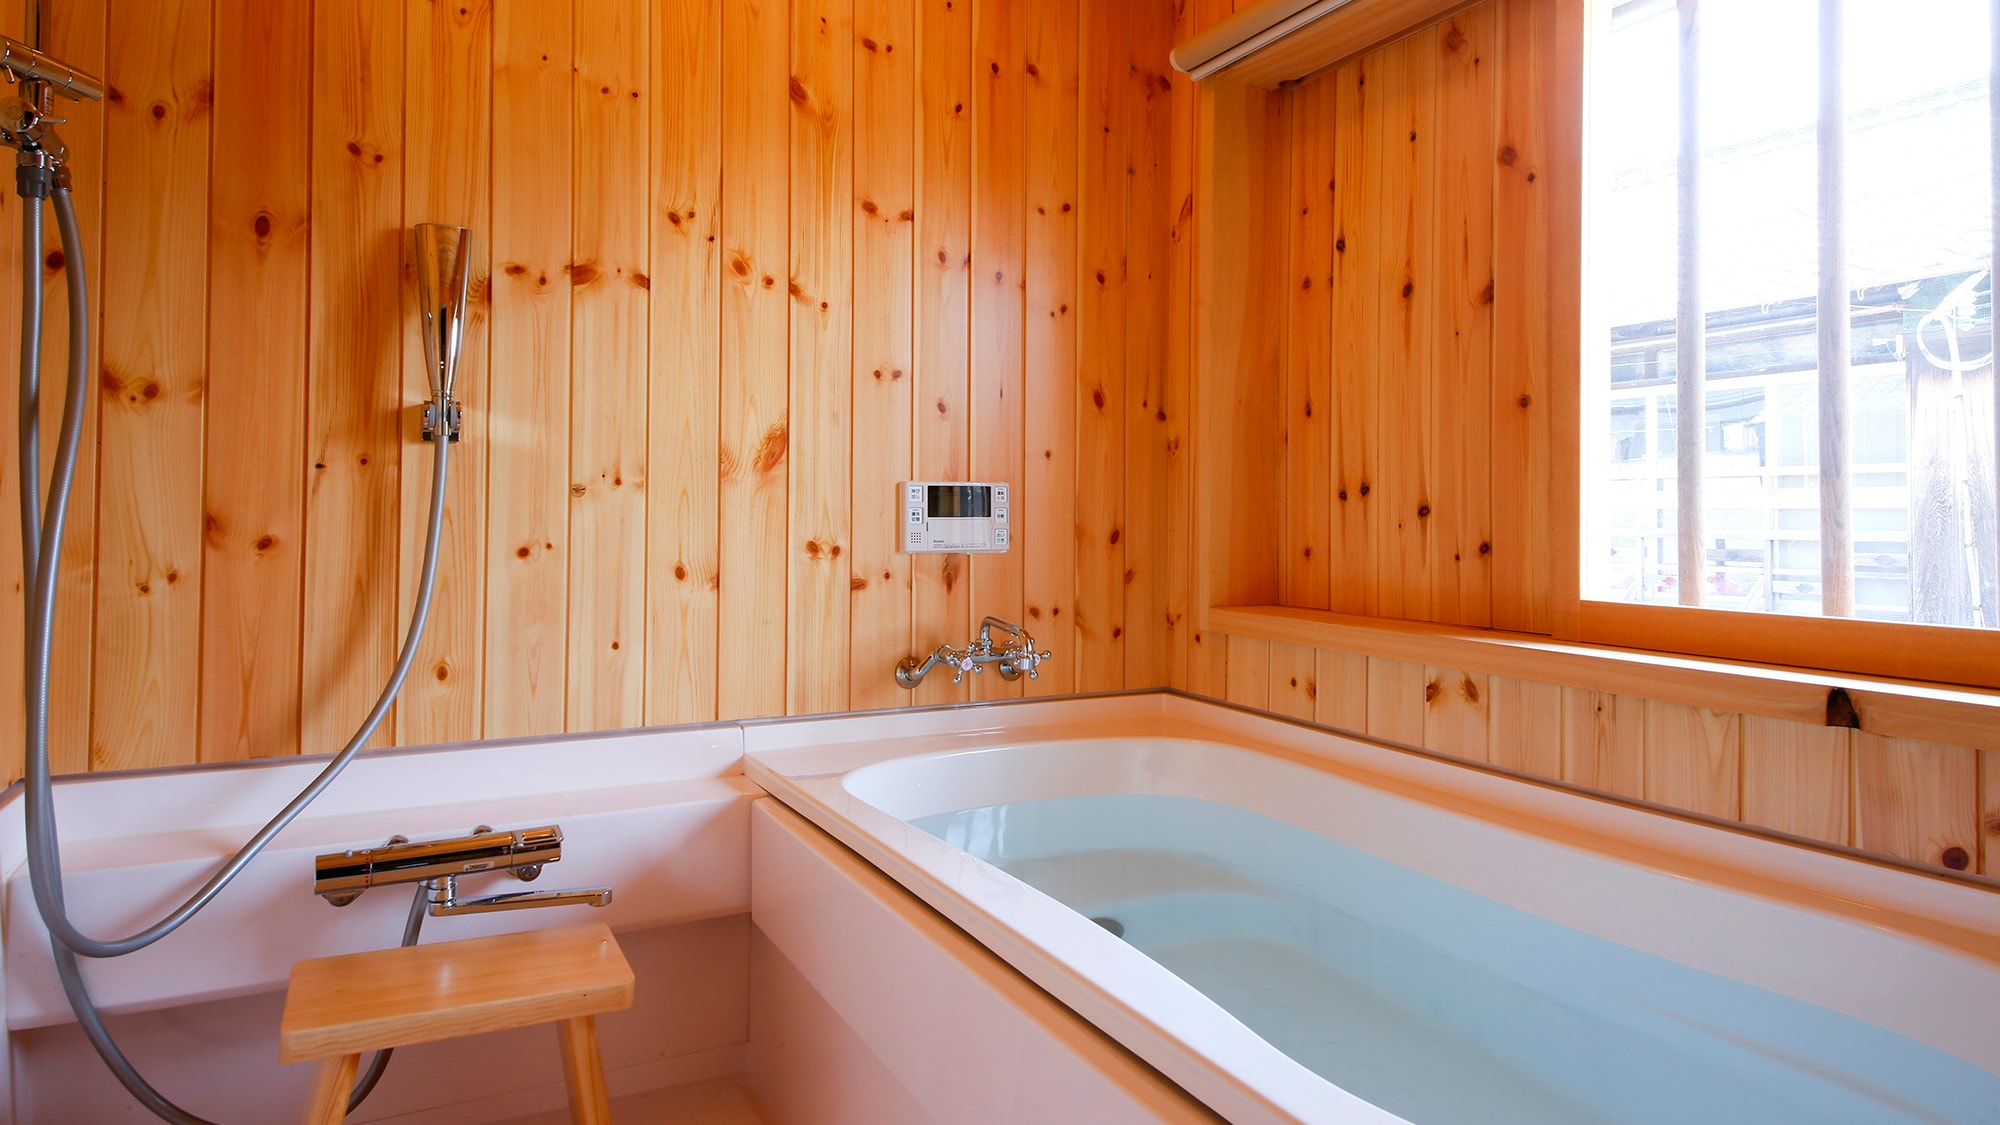 【무코 (나데시코)】 레인 샤워기를 설치 한 목욕